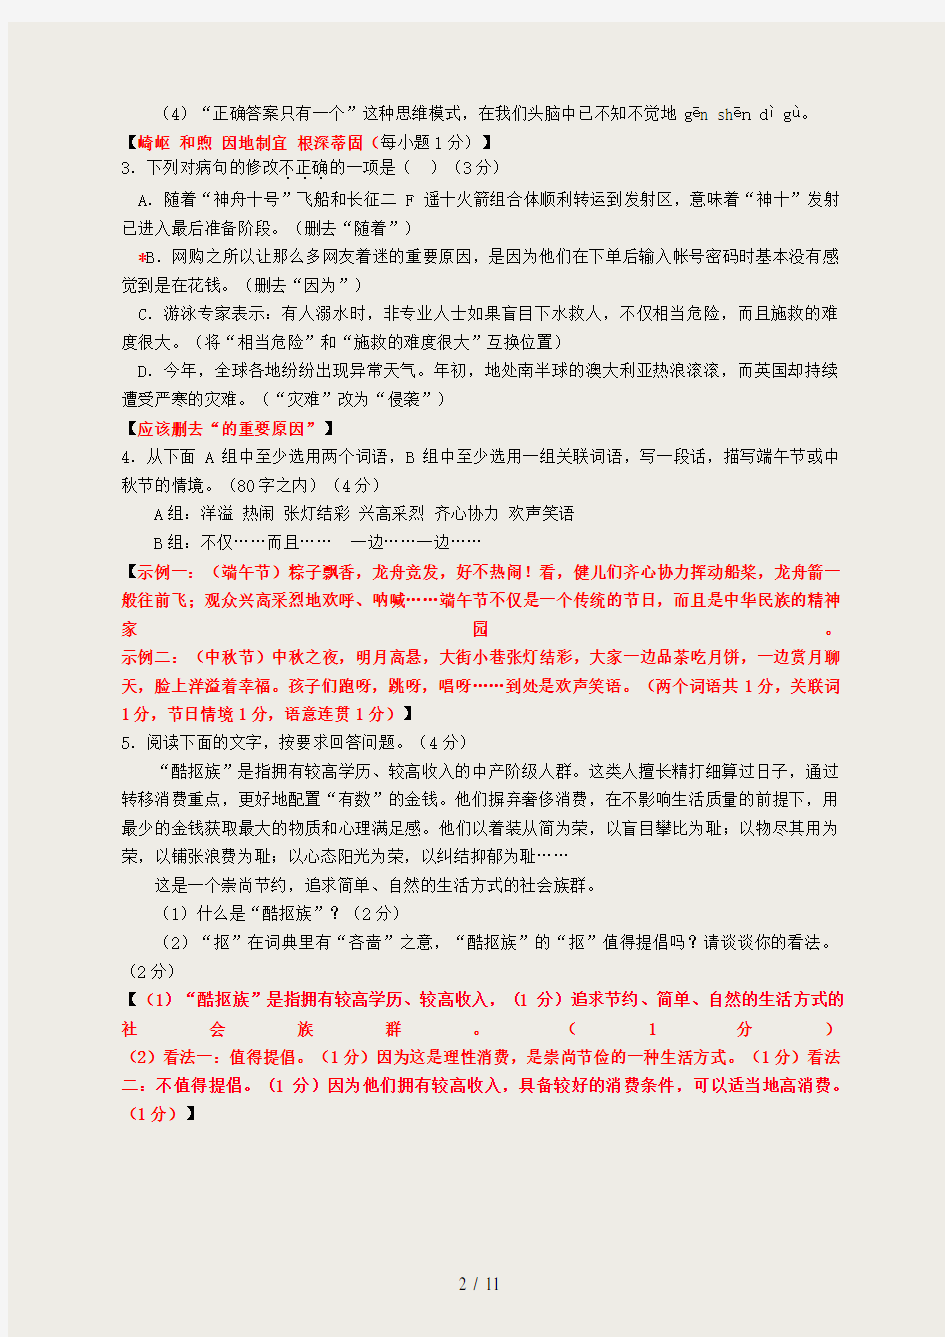 2013年广东中考语文试题(含答案)